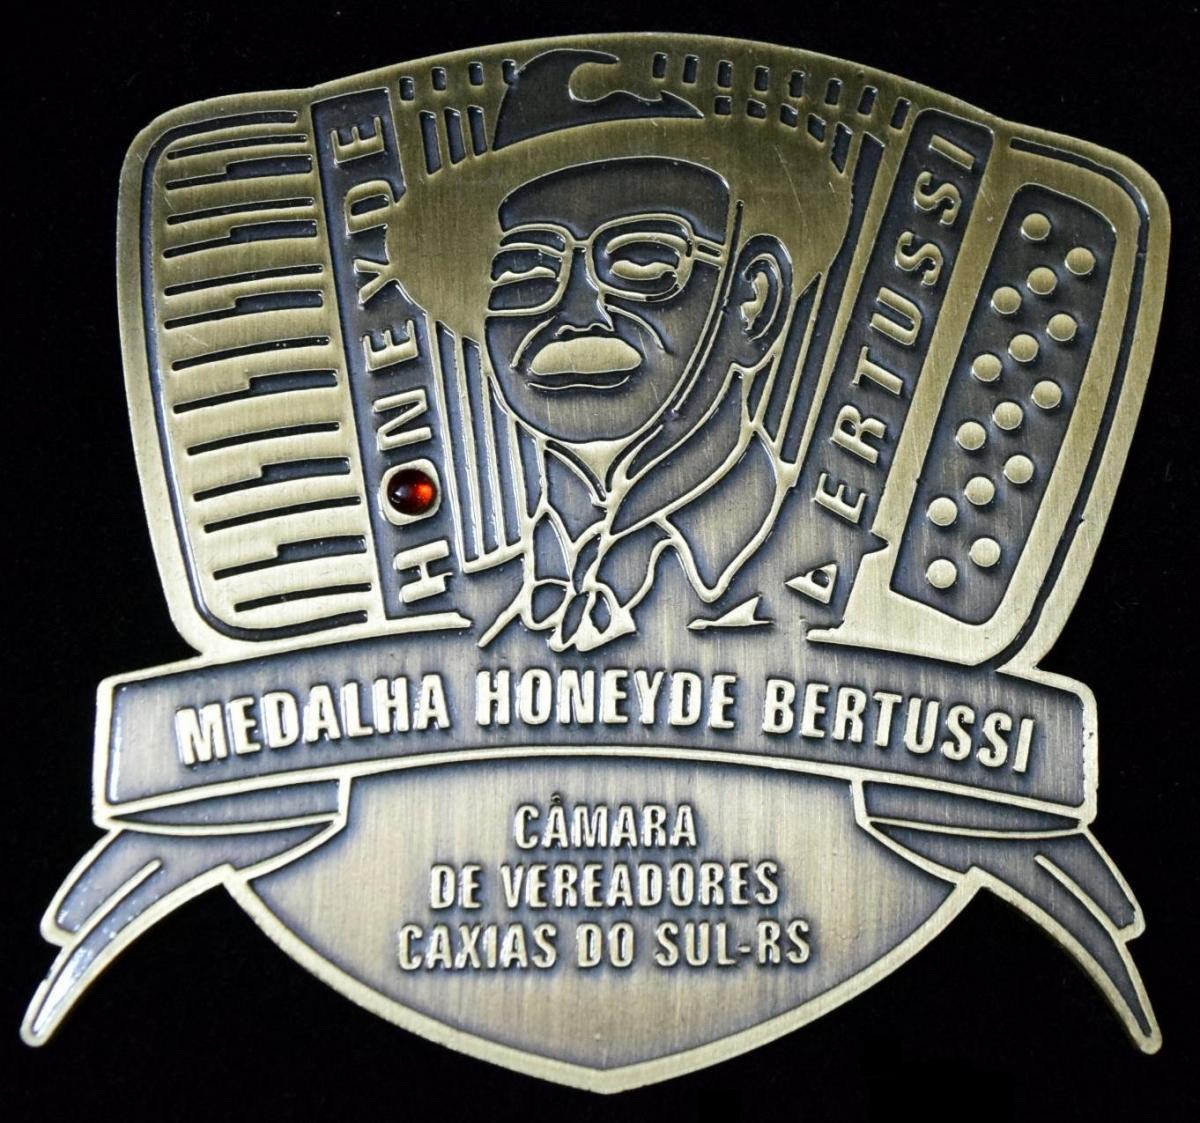 Quatro nomes são indicados para a Comenda Medalha Honeyde Bertussi 2016